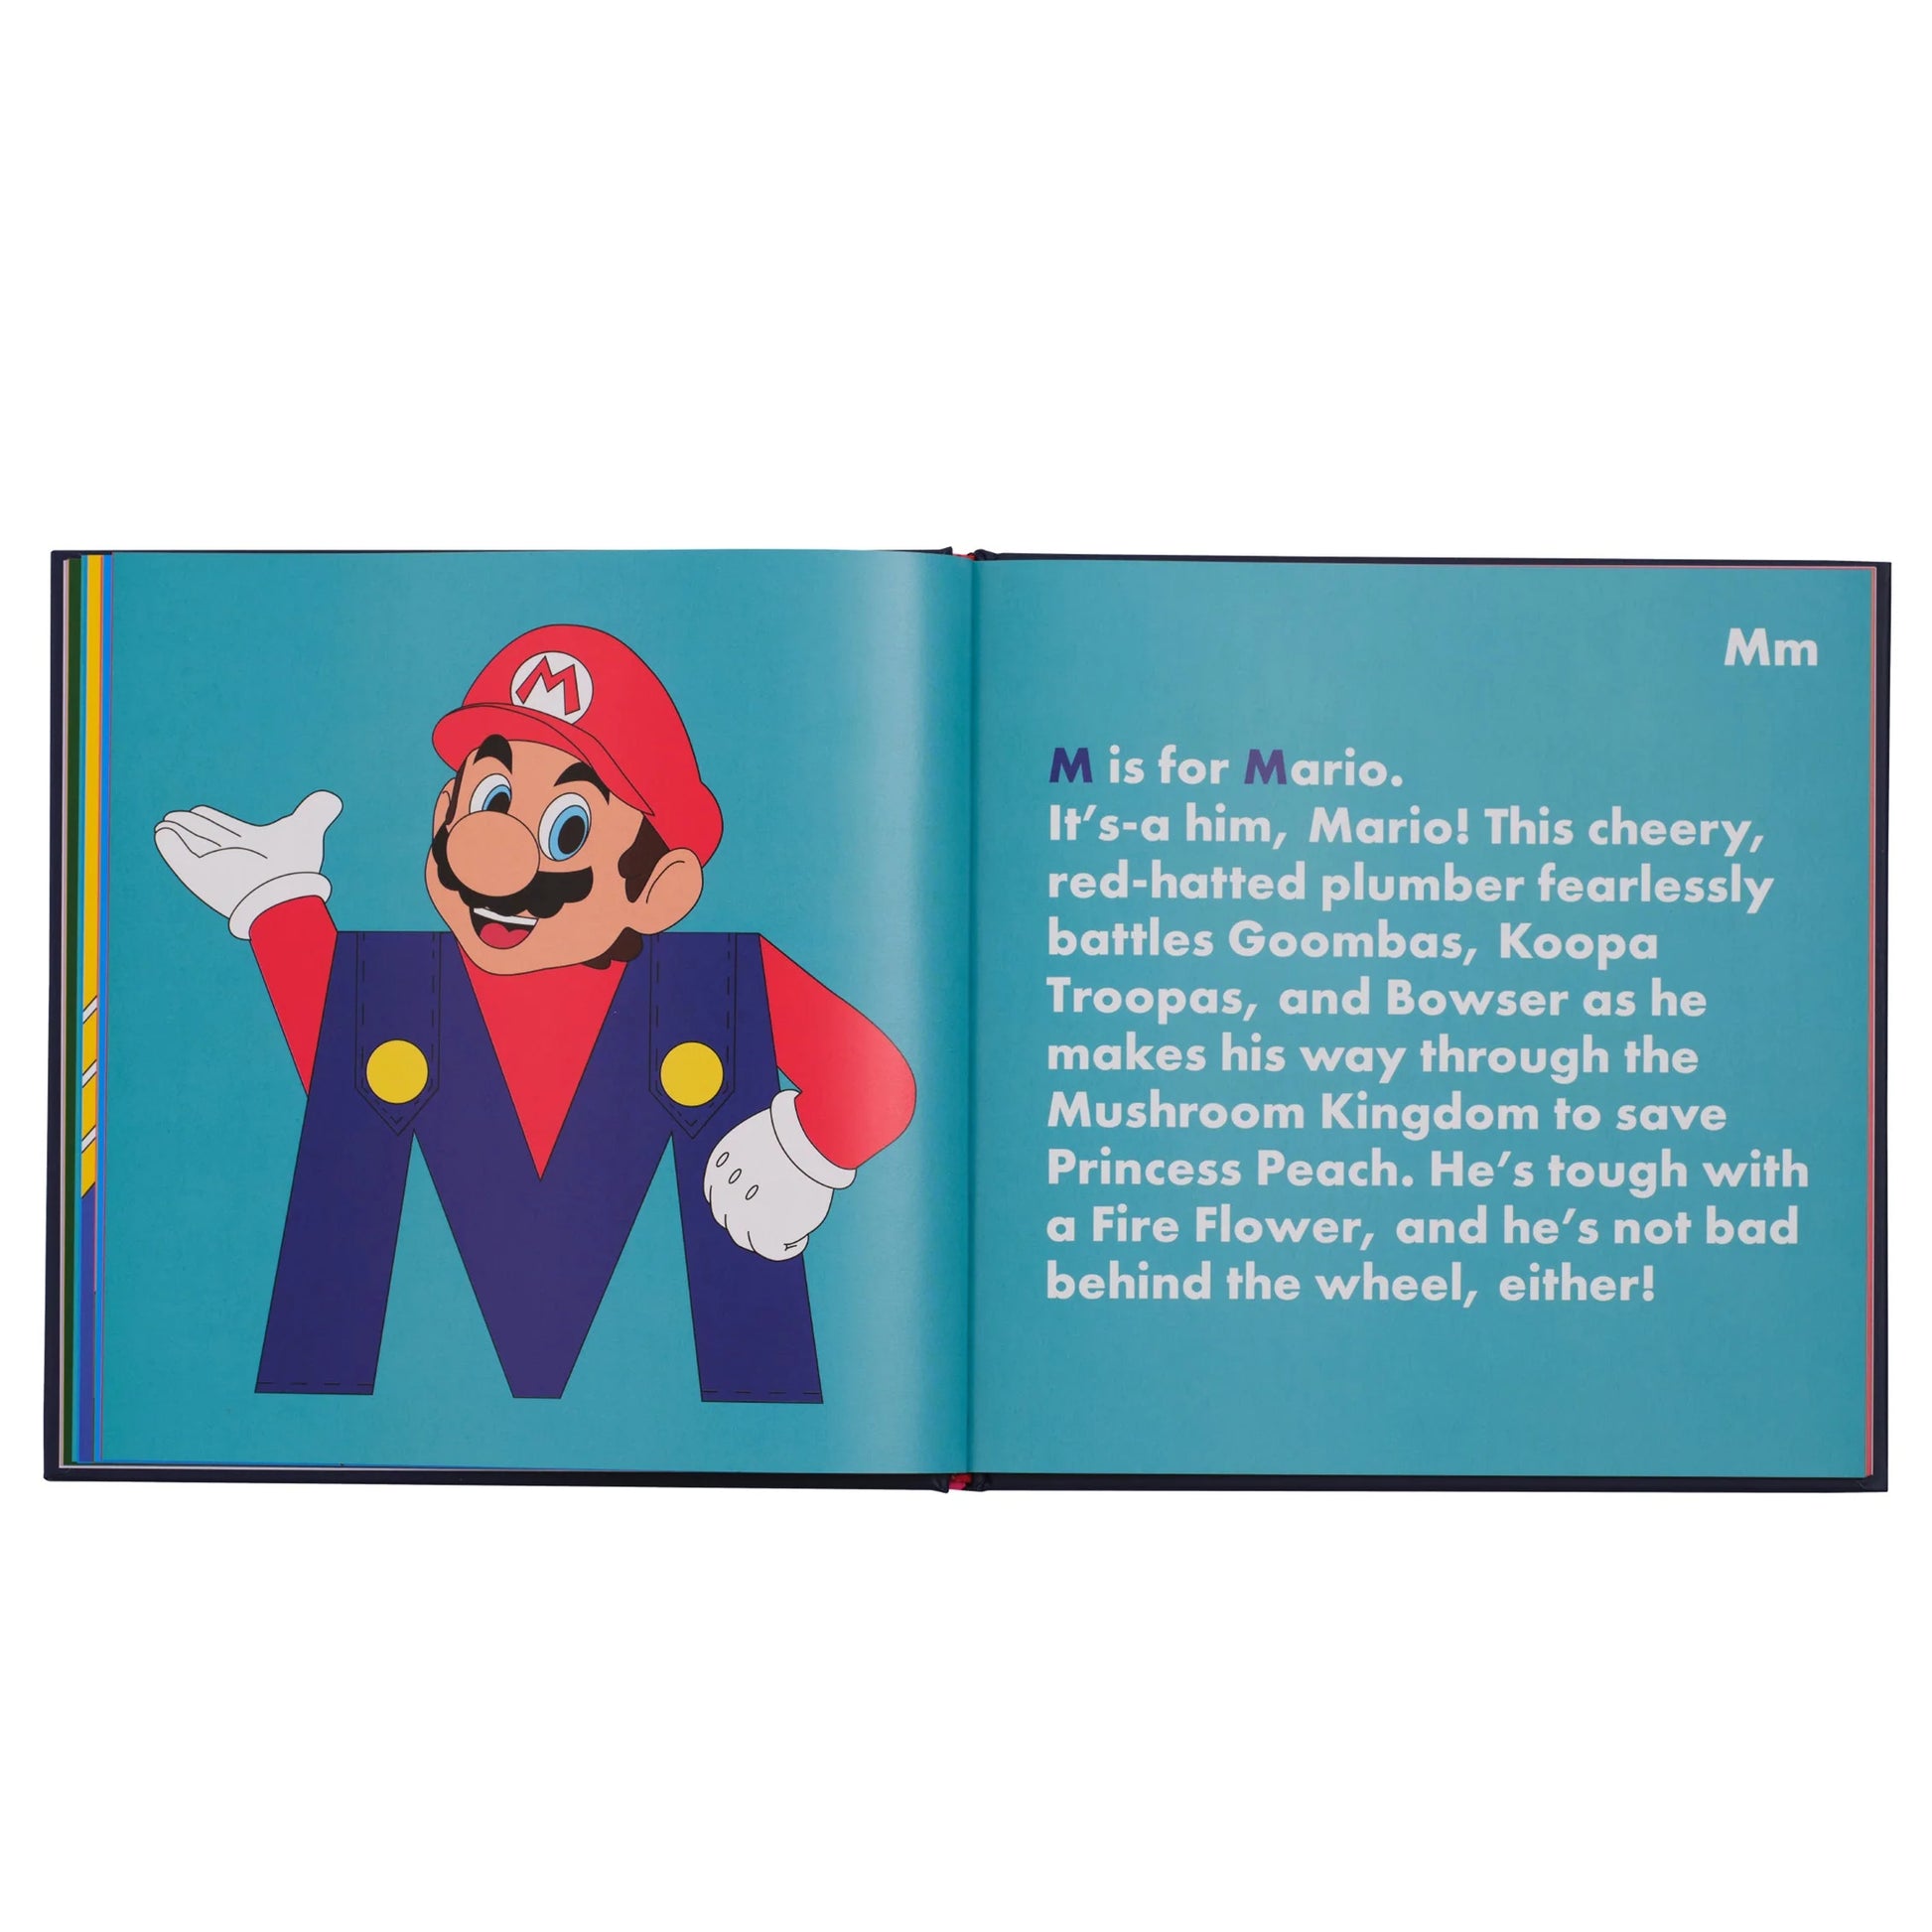 Video Game Legends Alphabet Book from Alphabet Legends | Bear & Moo